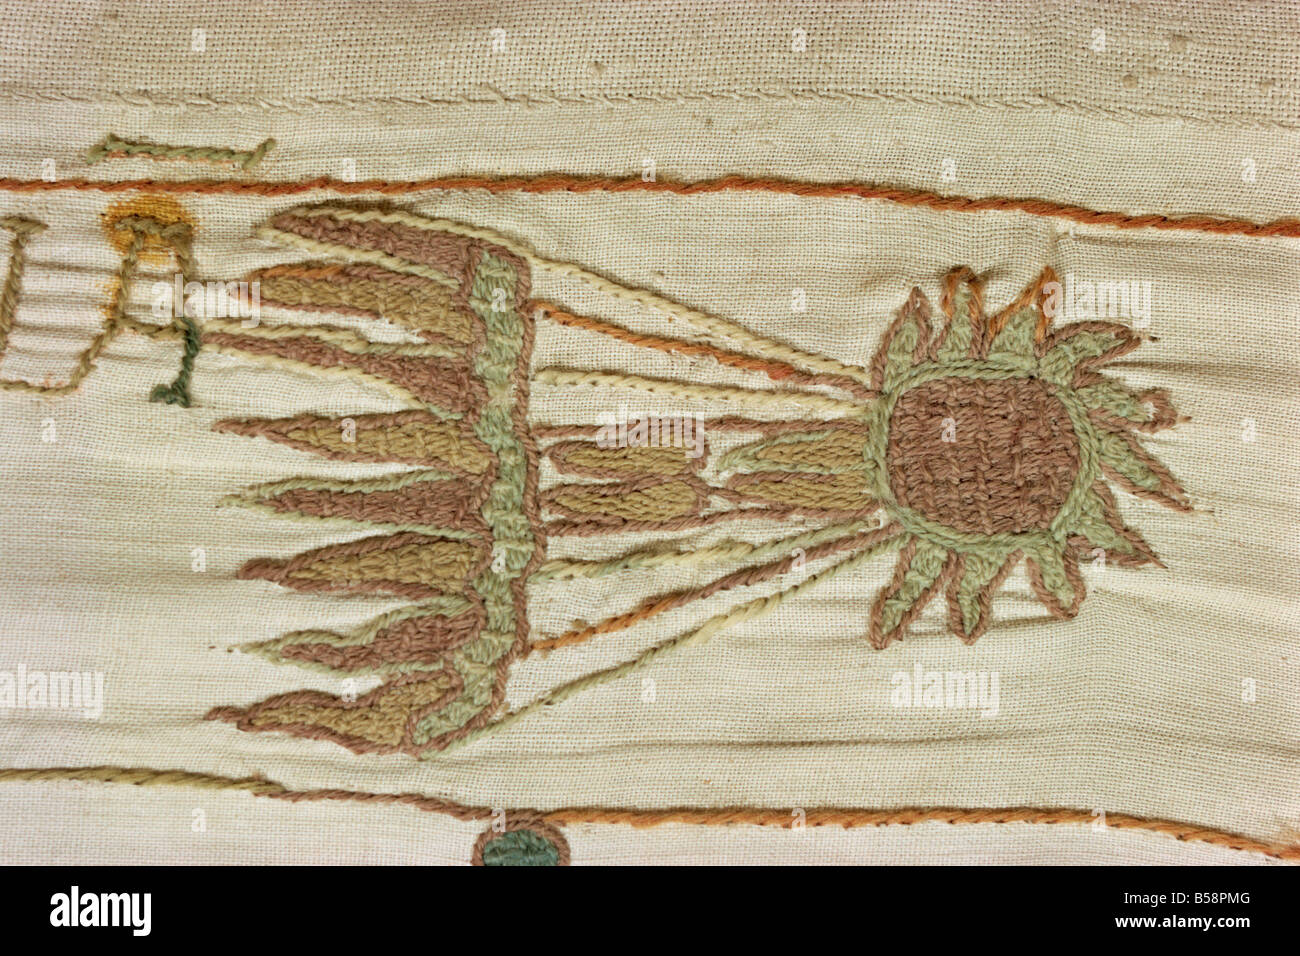 Détail de la comète de Halley, considéré comme un mauvais présage en février 1066 Tapisserie de Bayeux Bayeux Normandie France Europe Banque D'Images